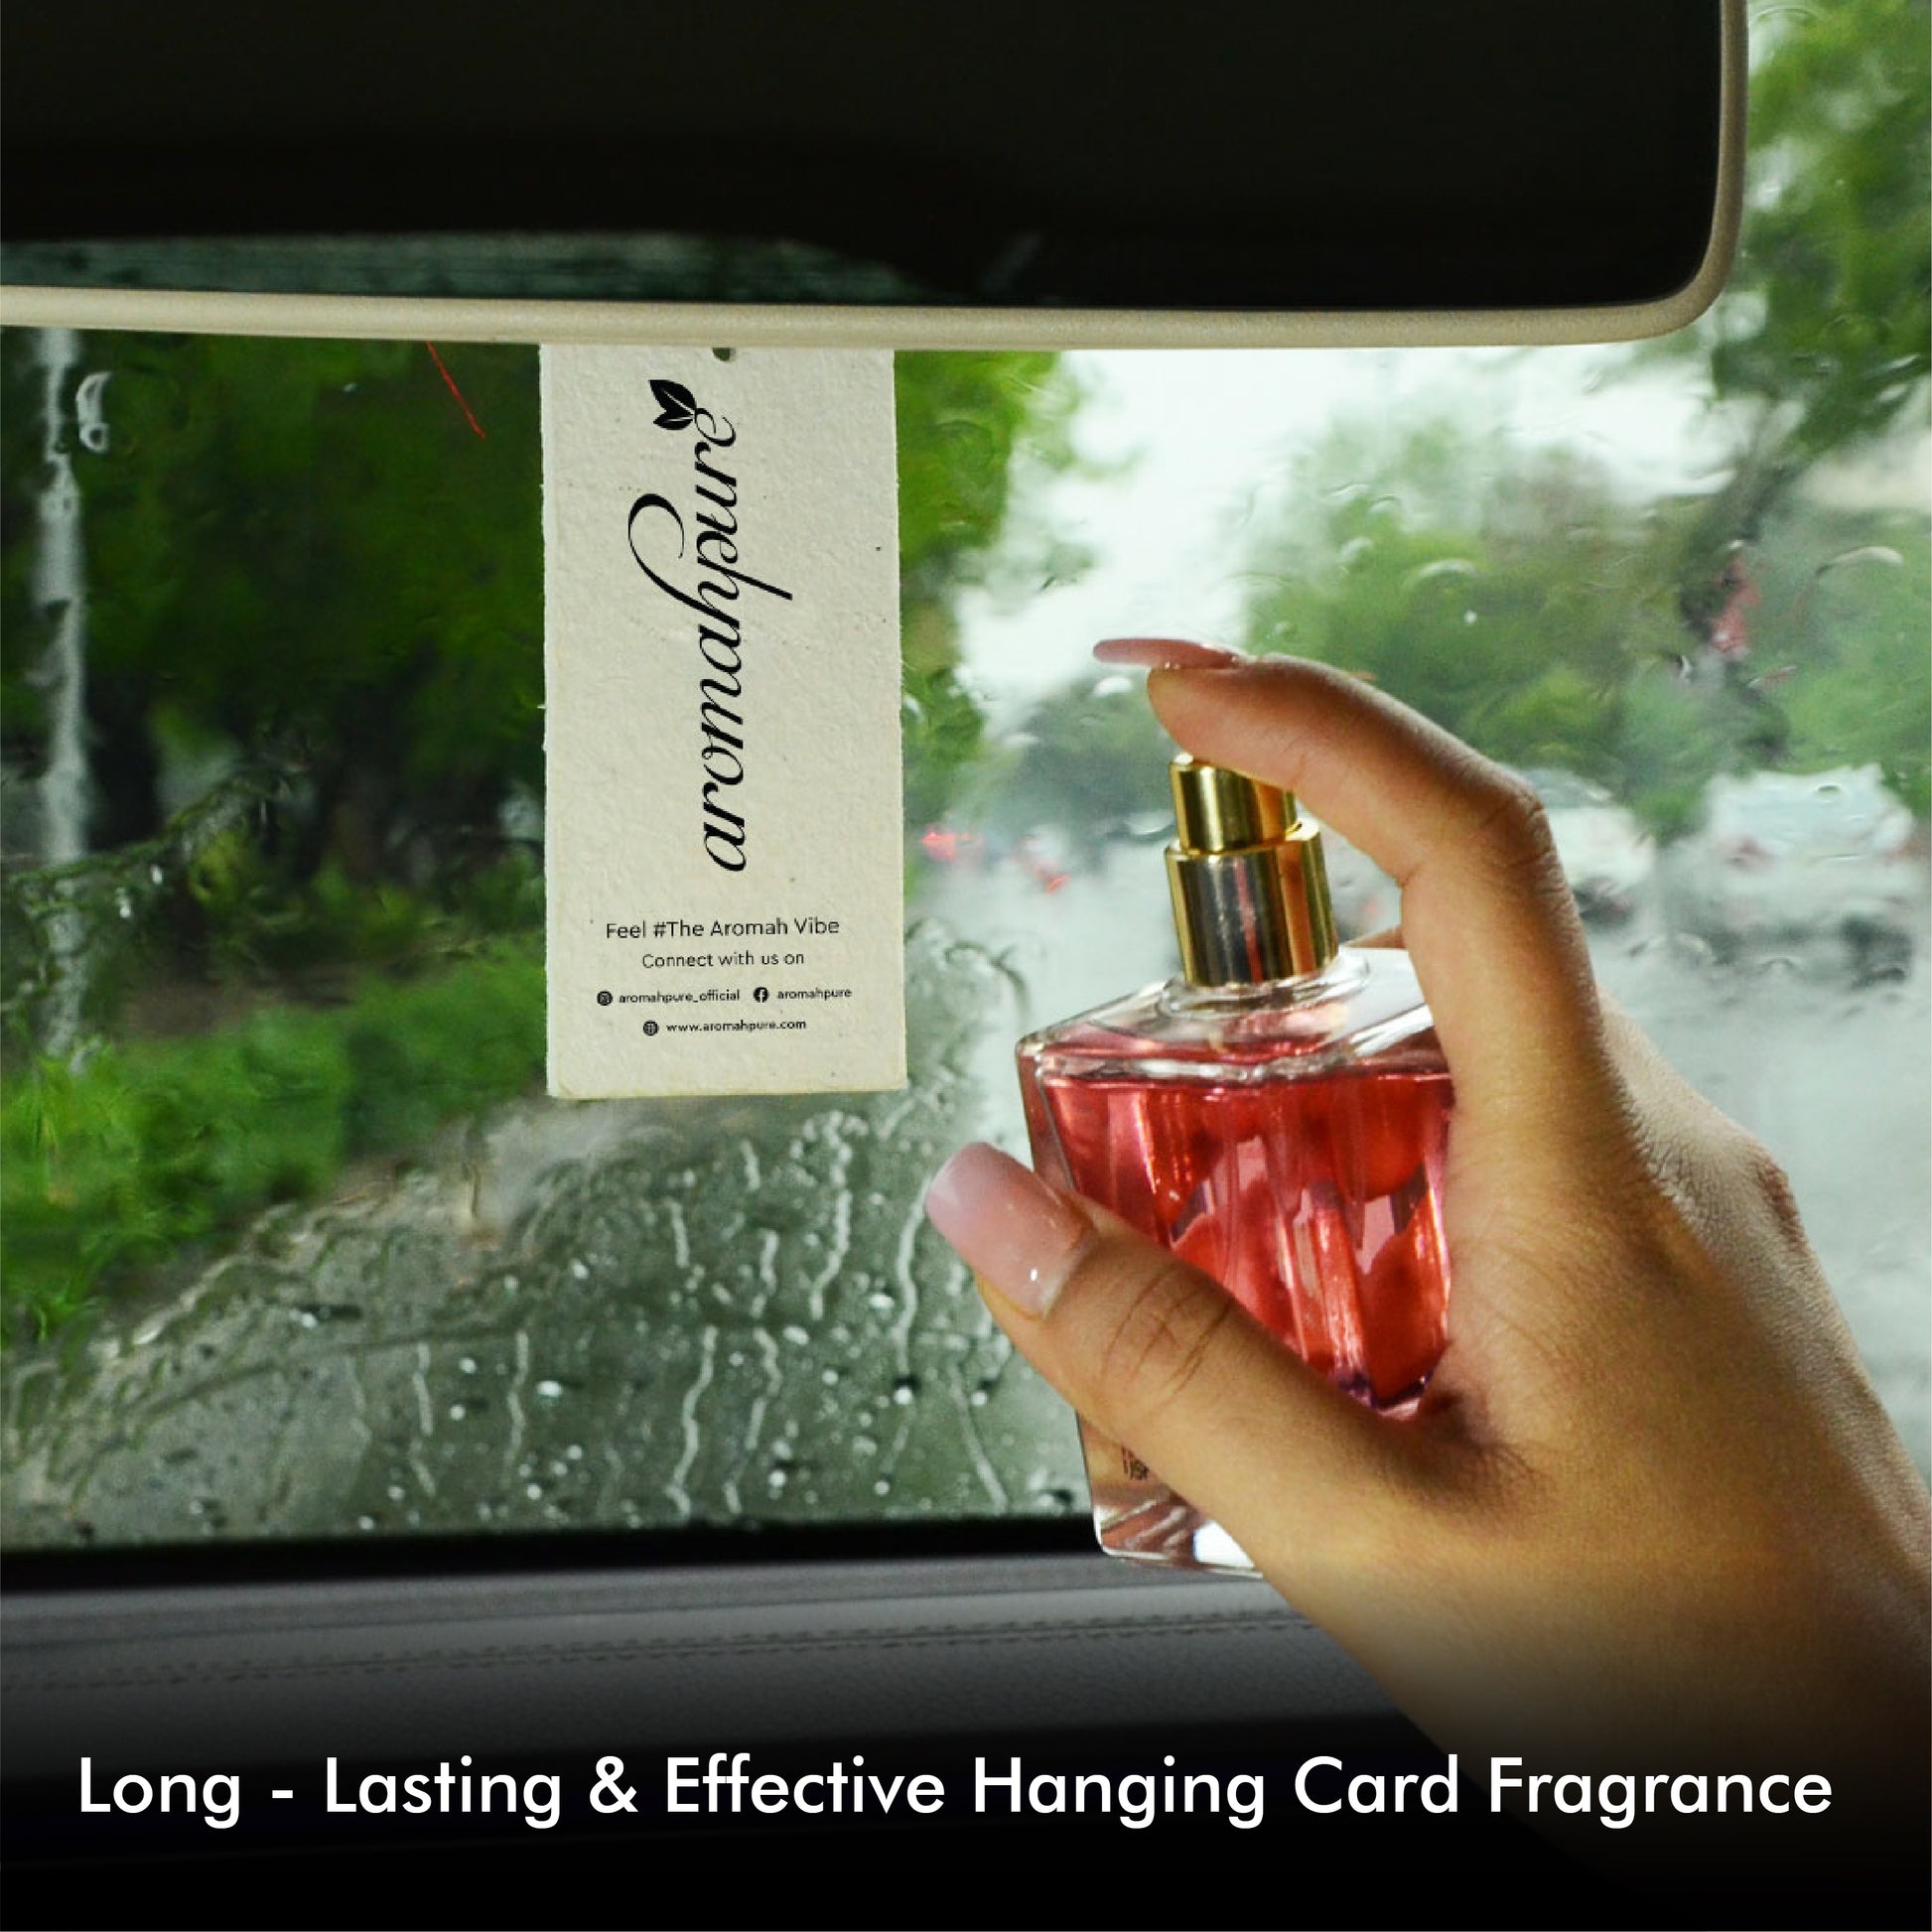 Buy Premium Car Perfume Spray with Hanging Card (Grapefruit) -Aromahpure